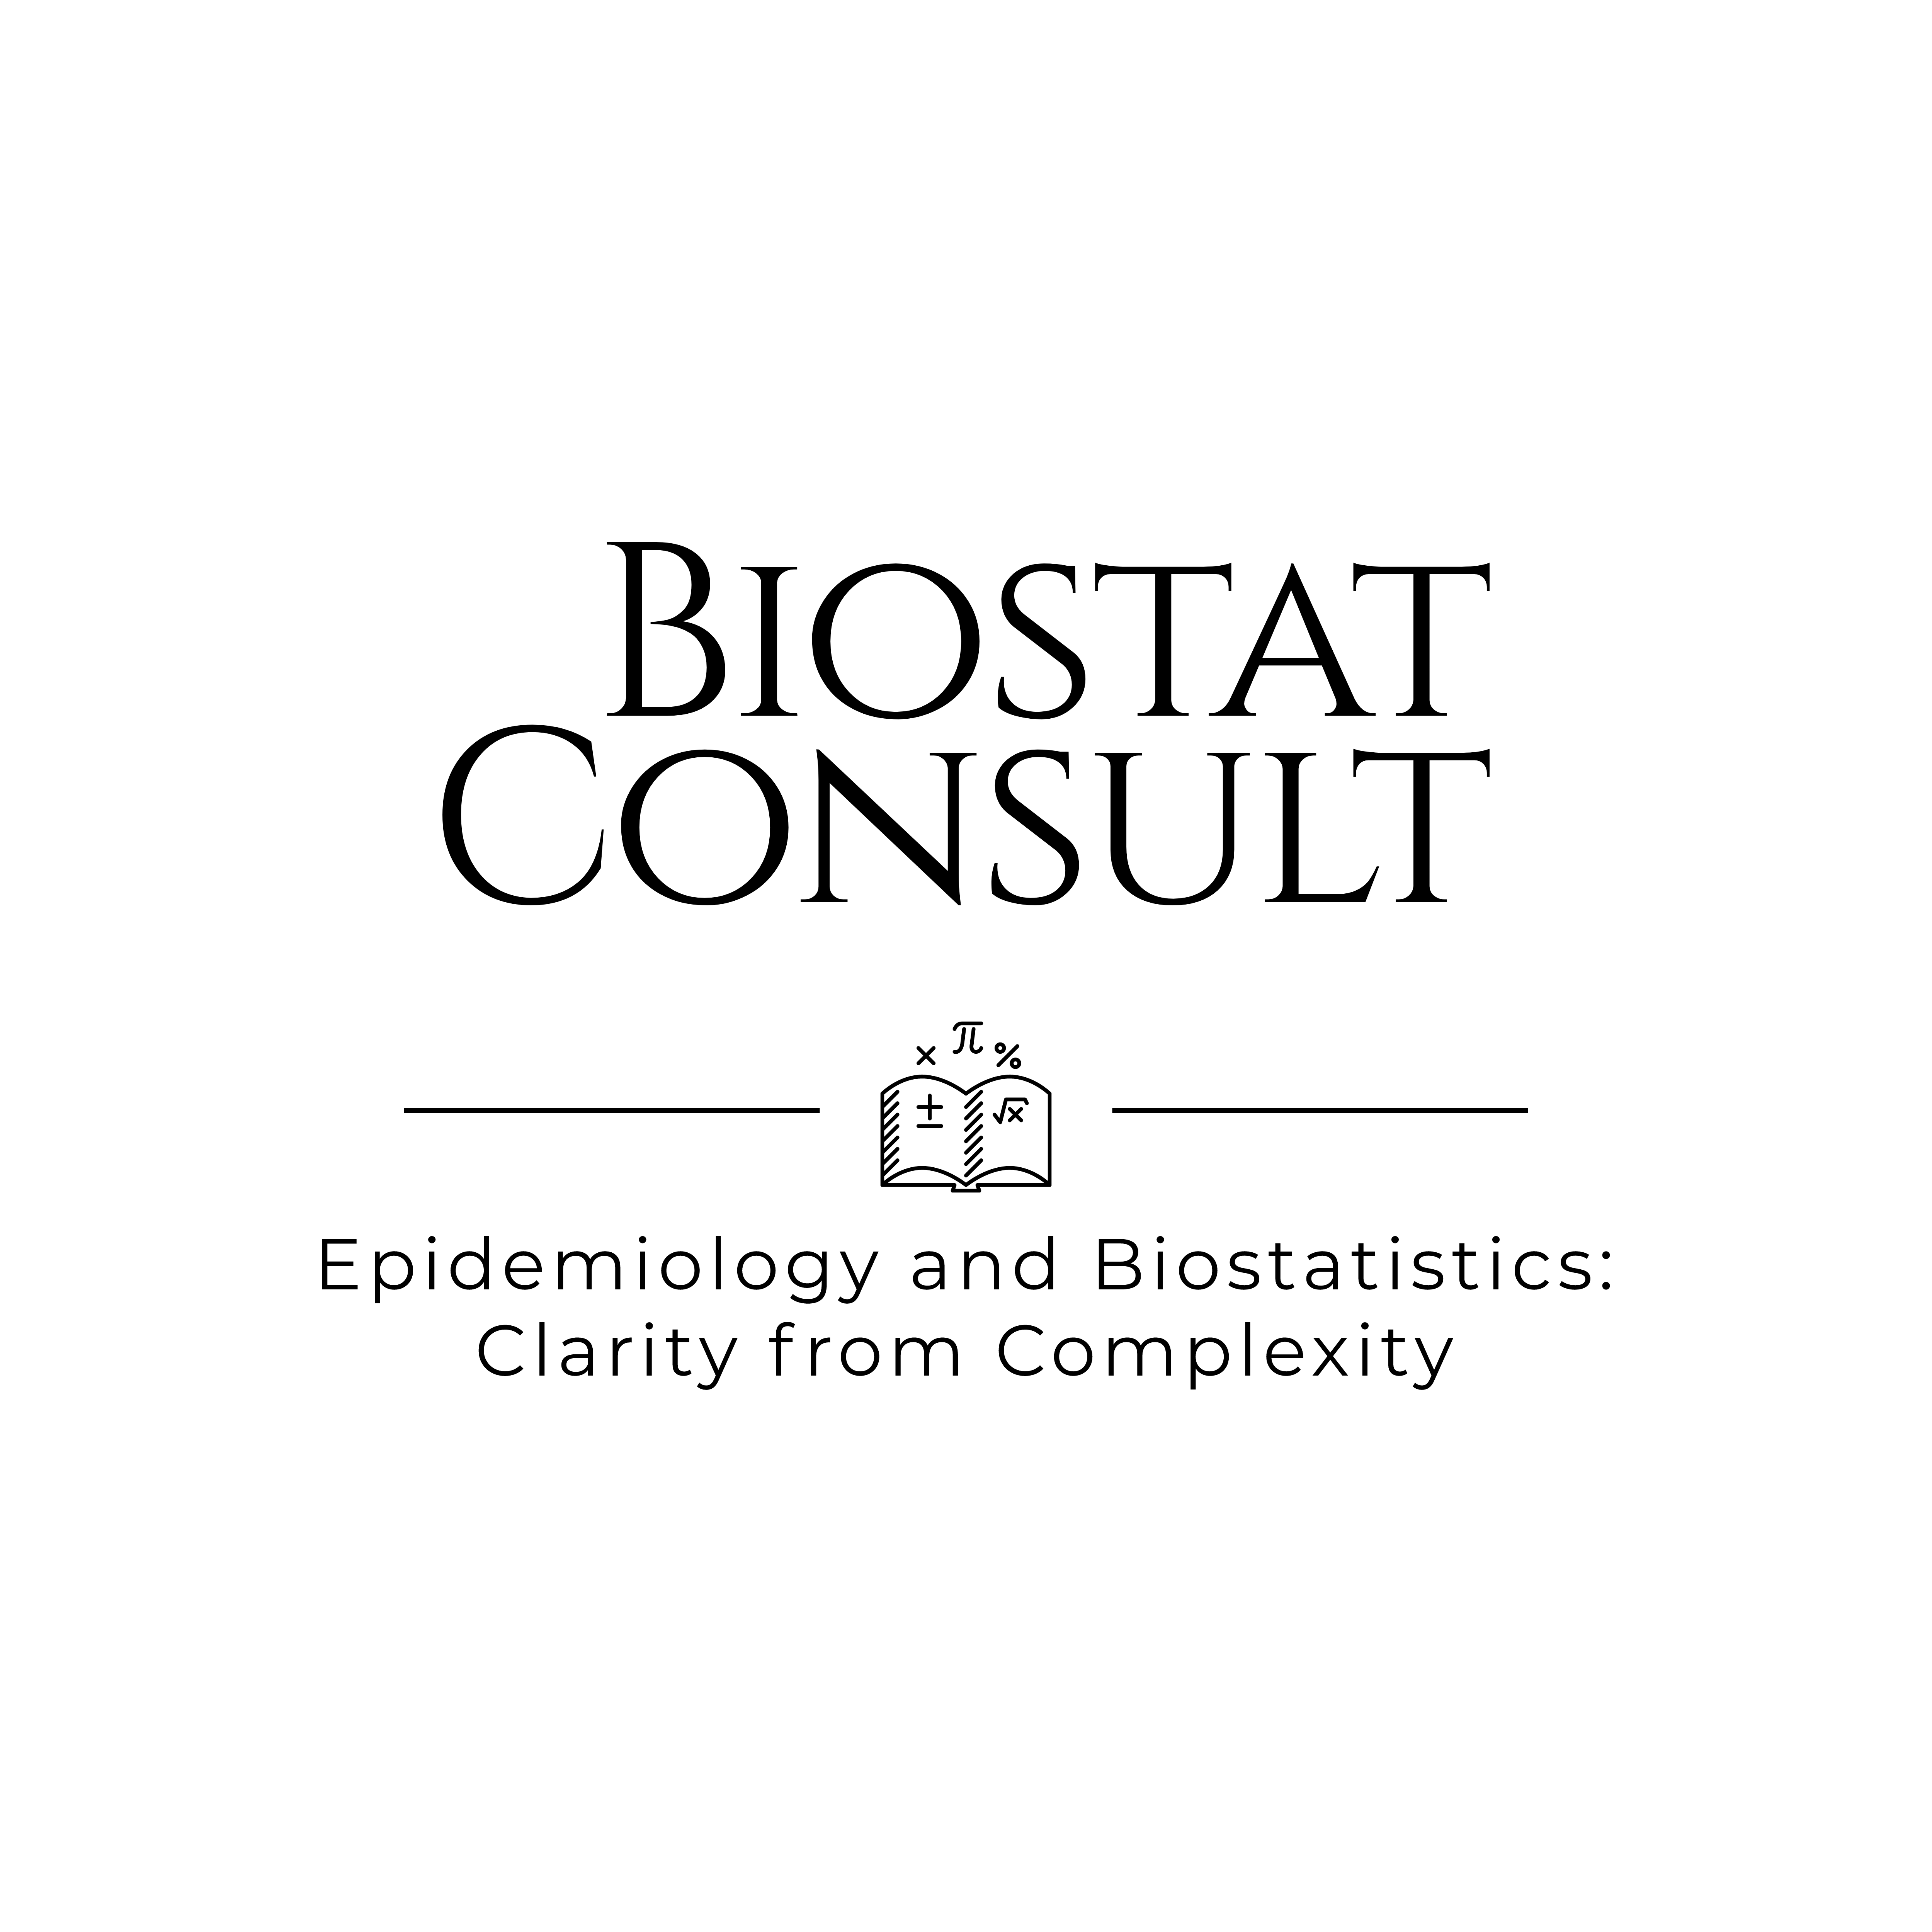 Biostat Consult